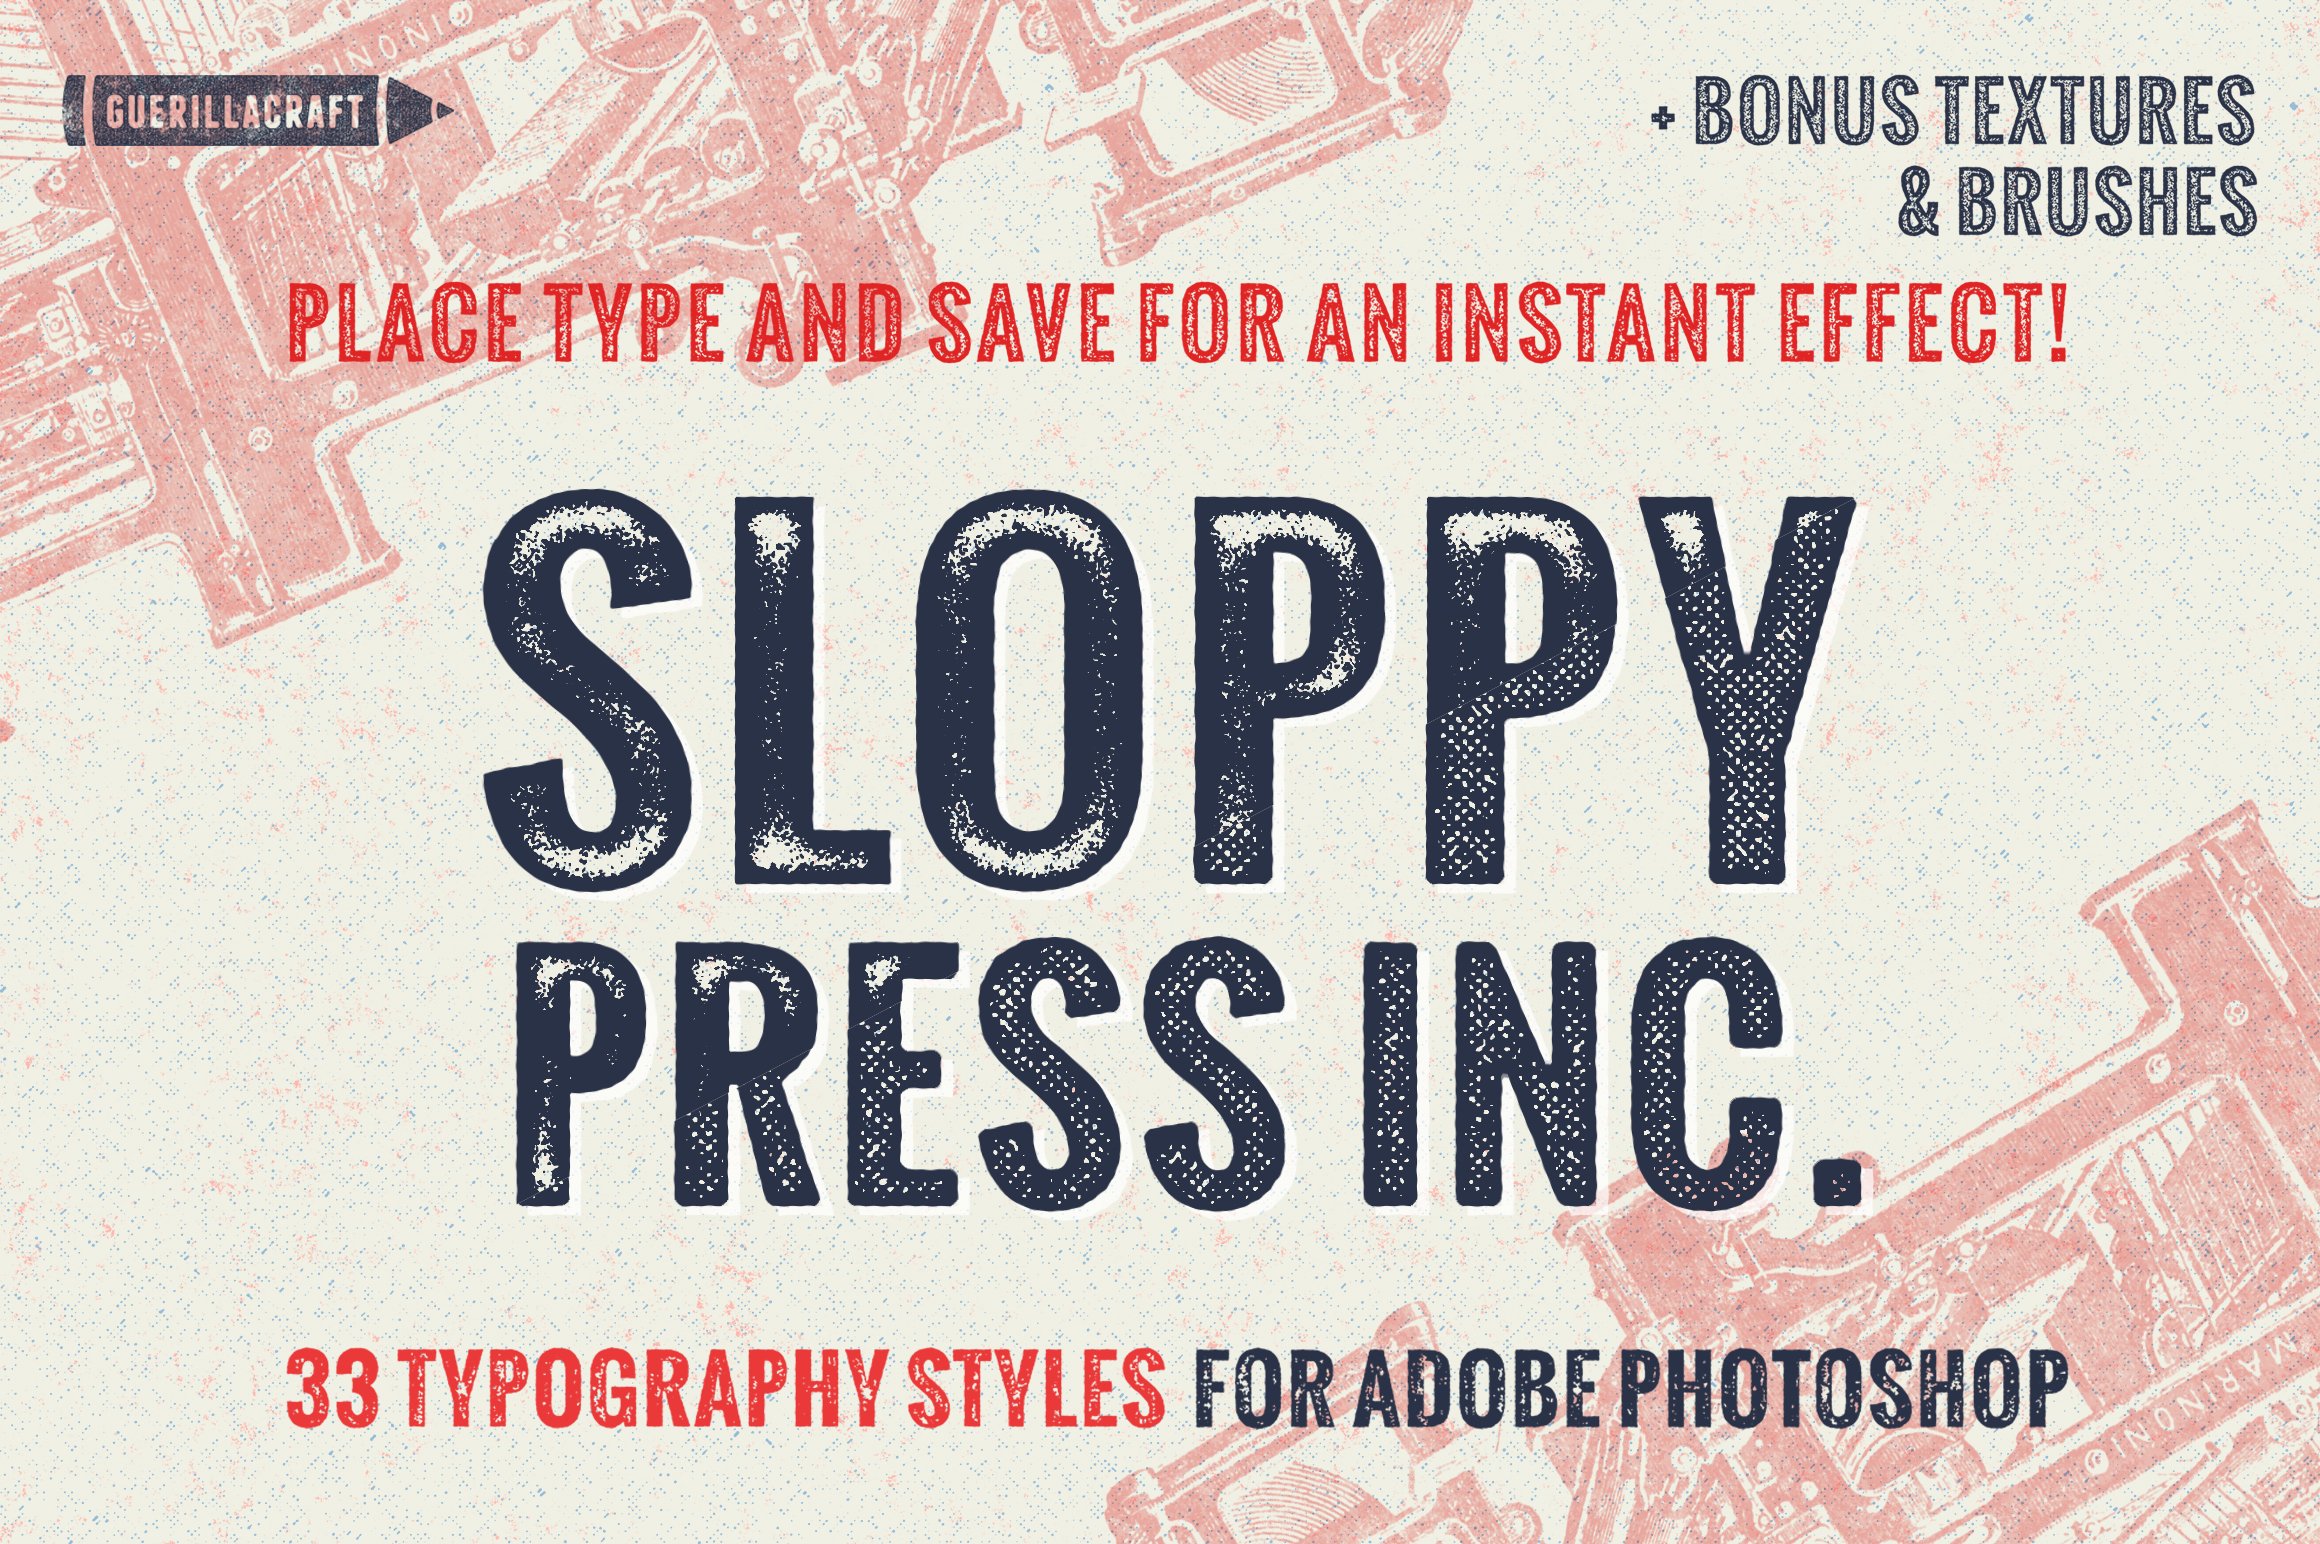 Sloppy Press Inc.cover image.